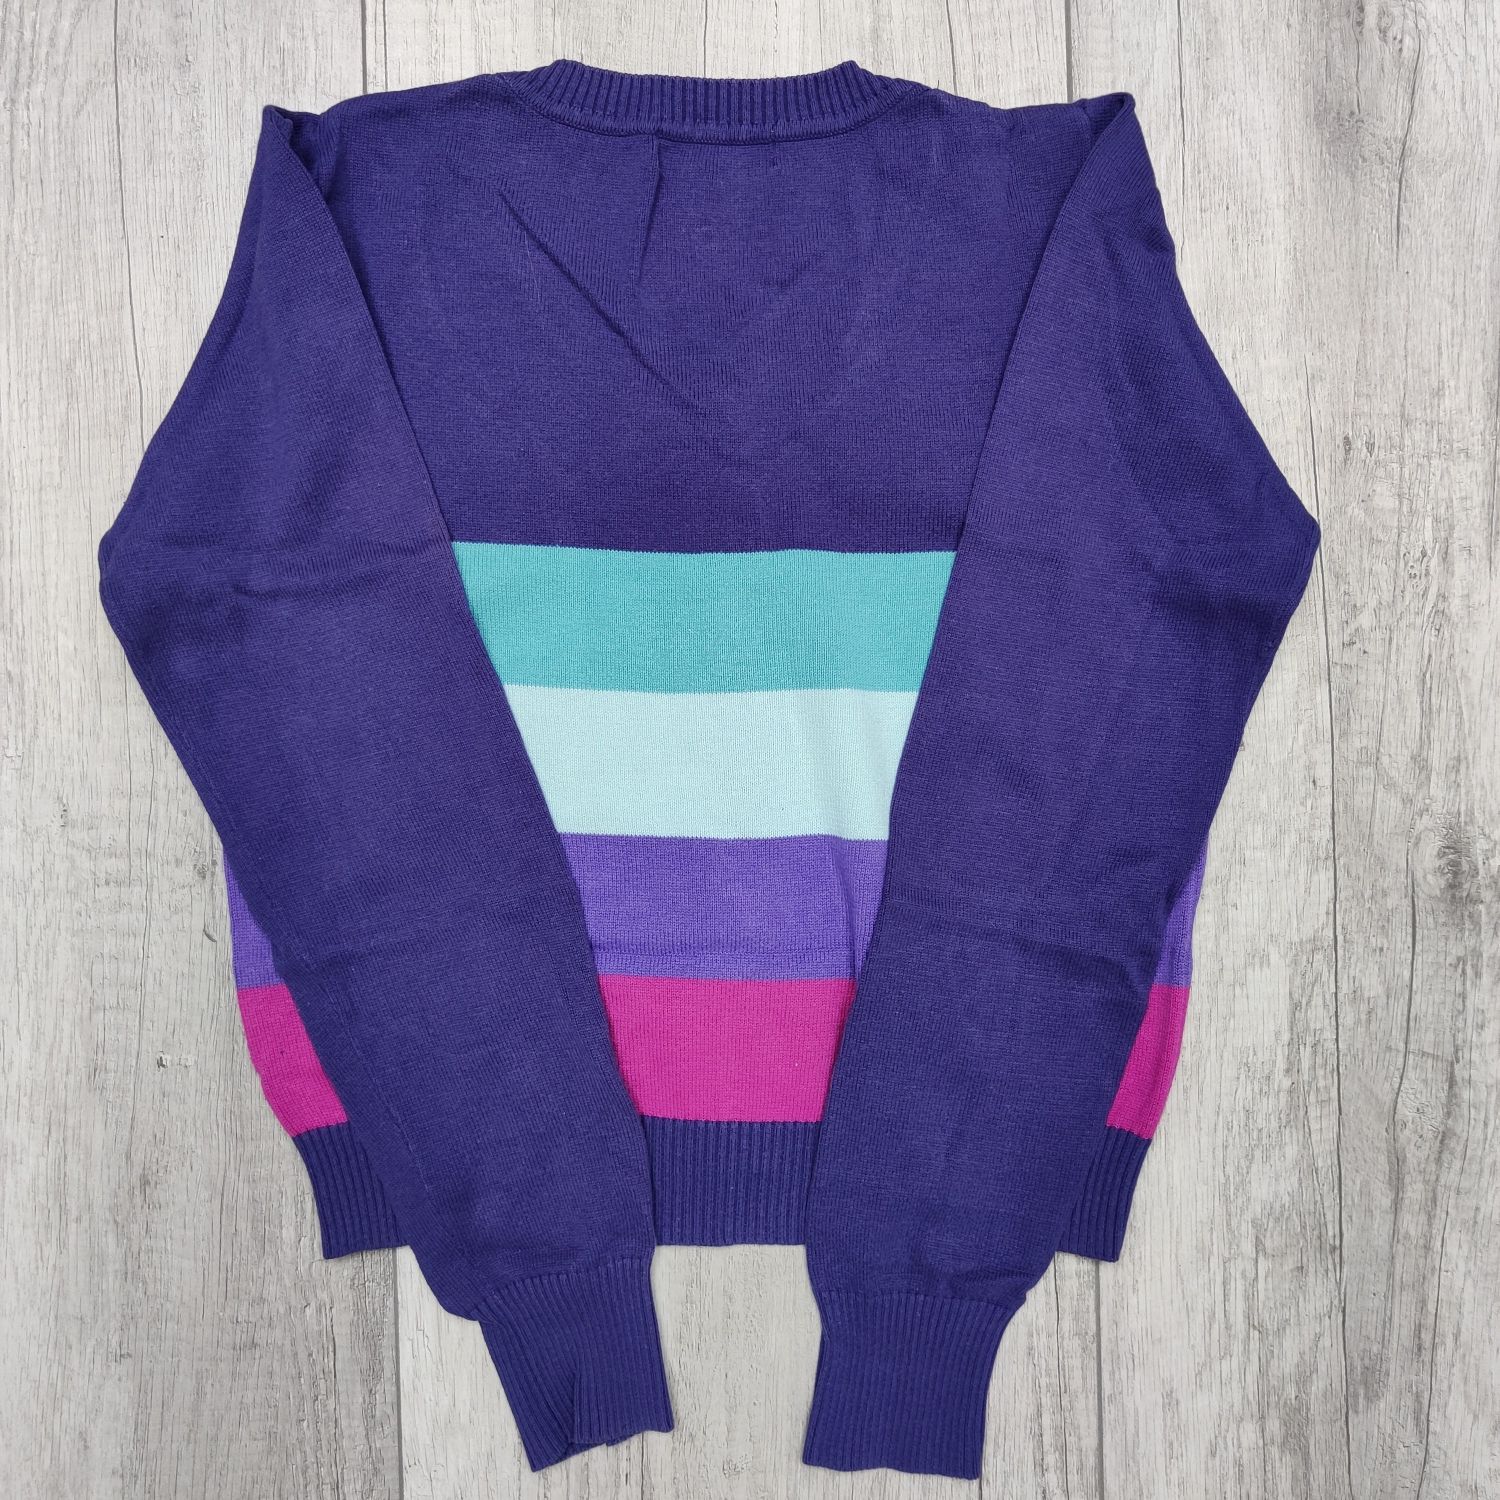 Granatowy sweter damski rozpinany w paski, sweterek, rozmiar M / 38